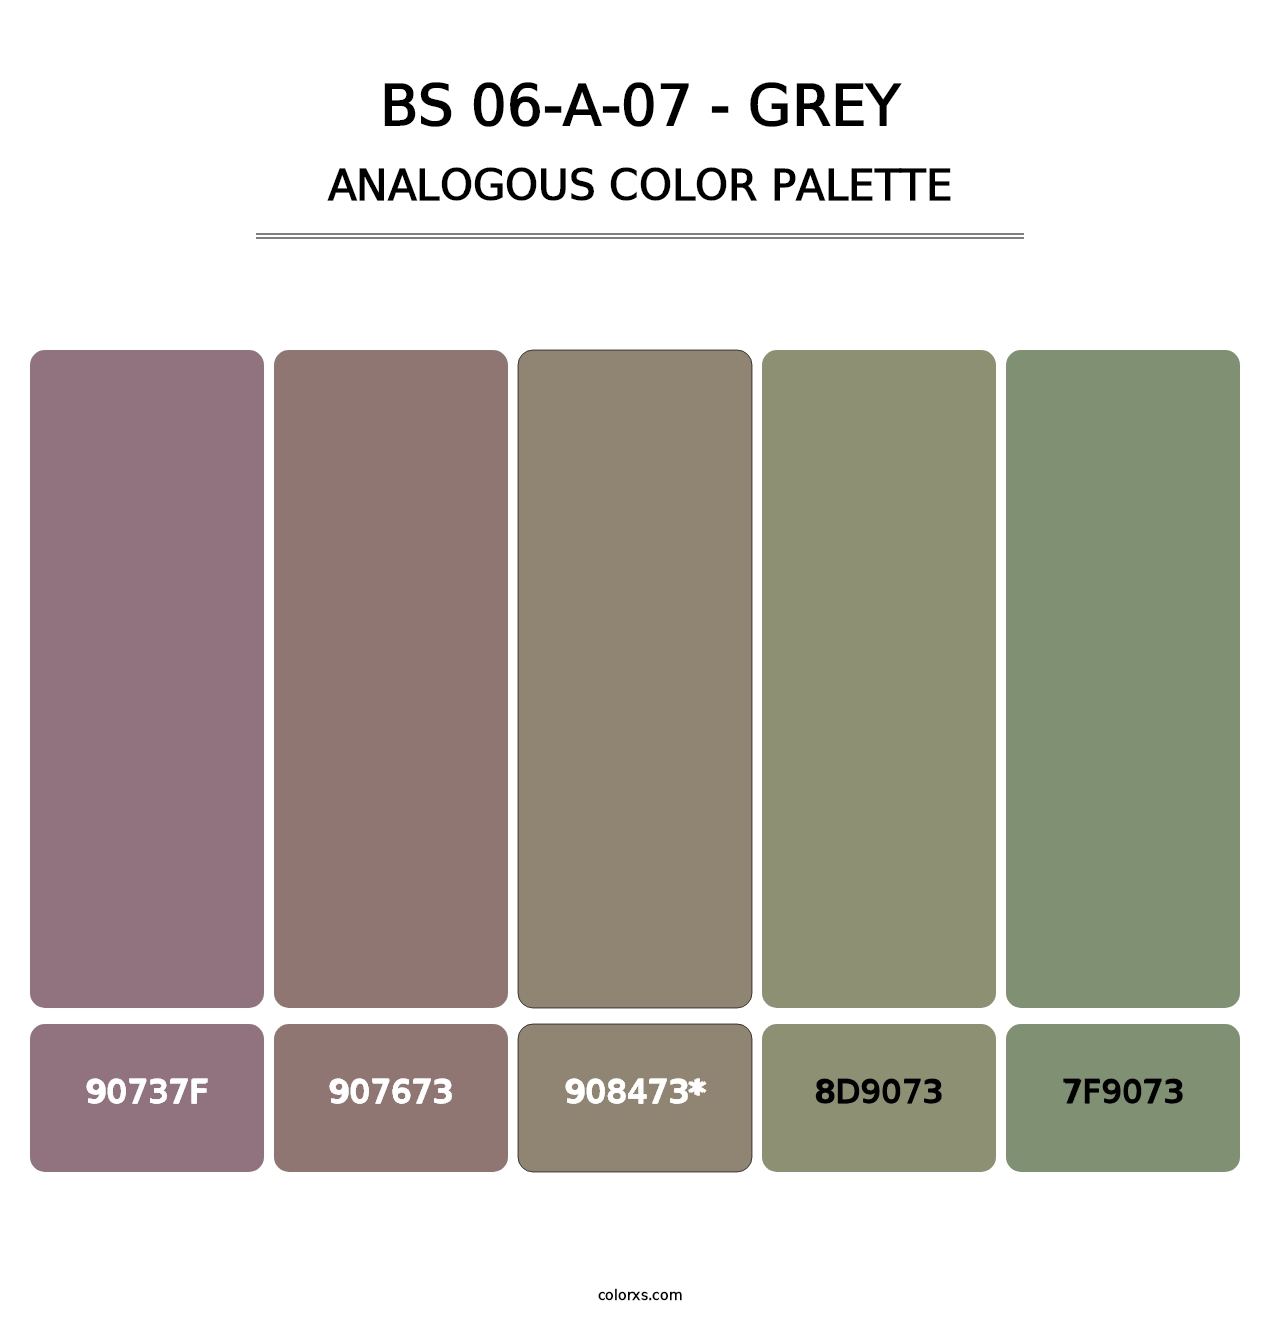 BS 06-A-07 - Grey - Analogous Color Palette